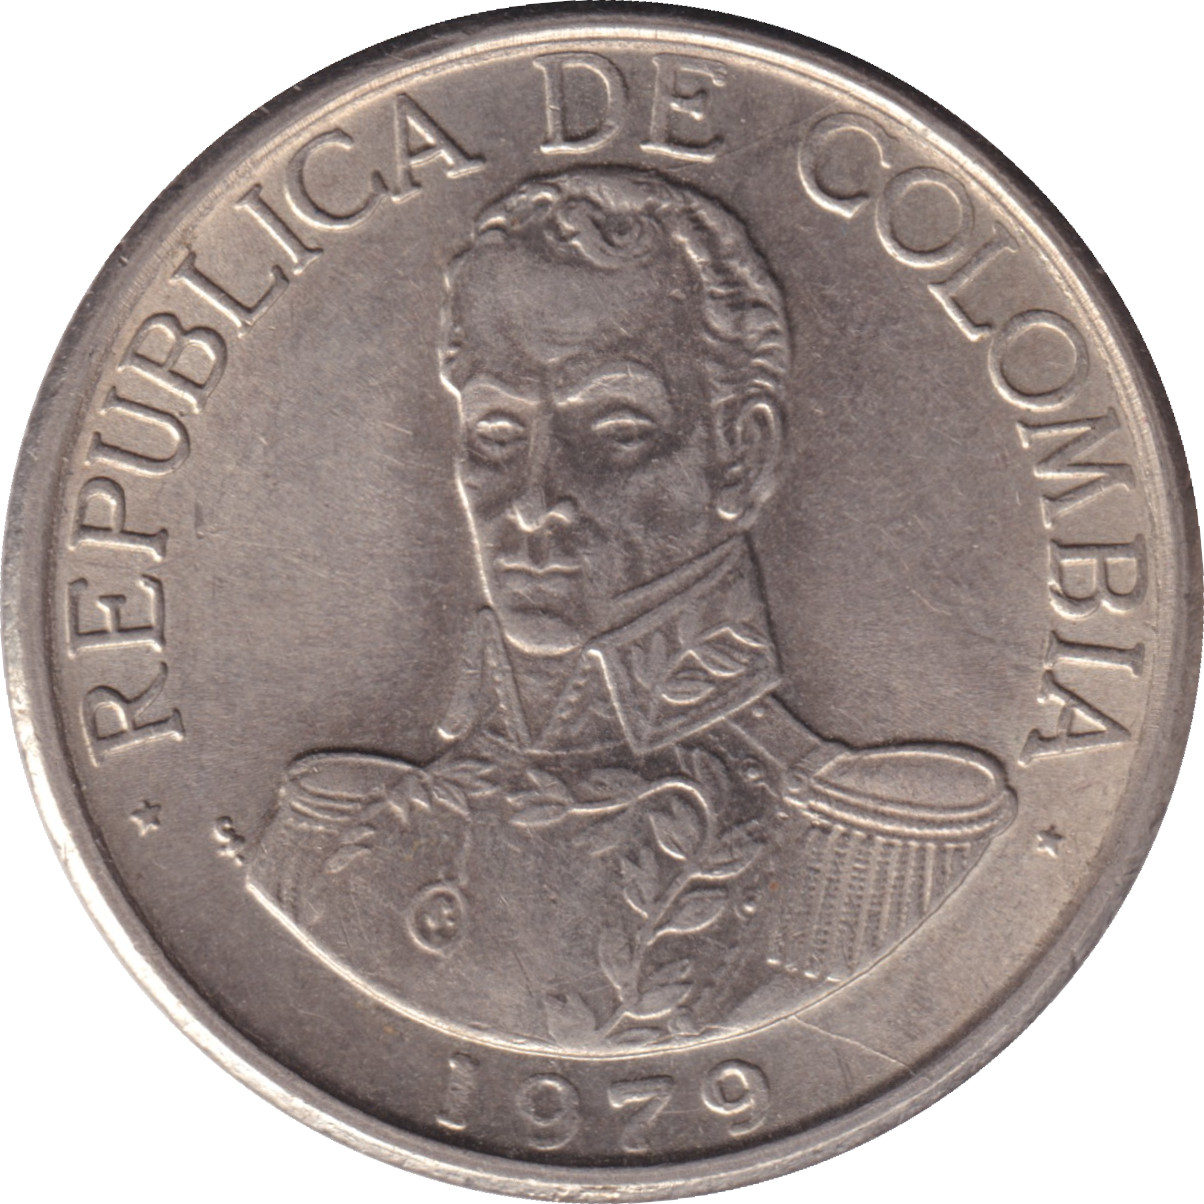 1 peso - Simon Bolivar de face